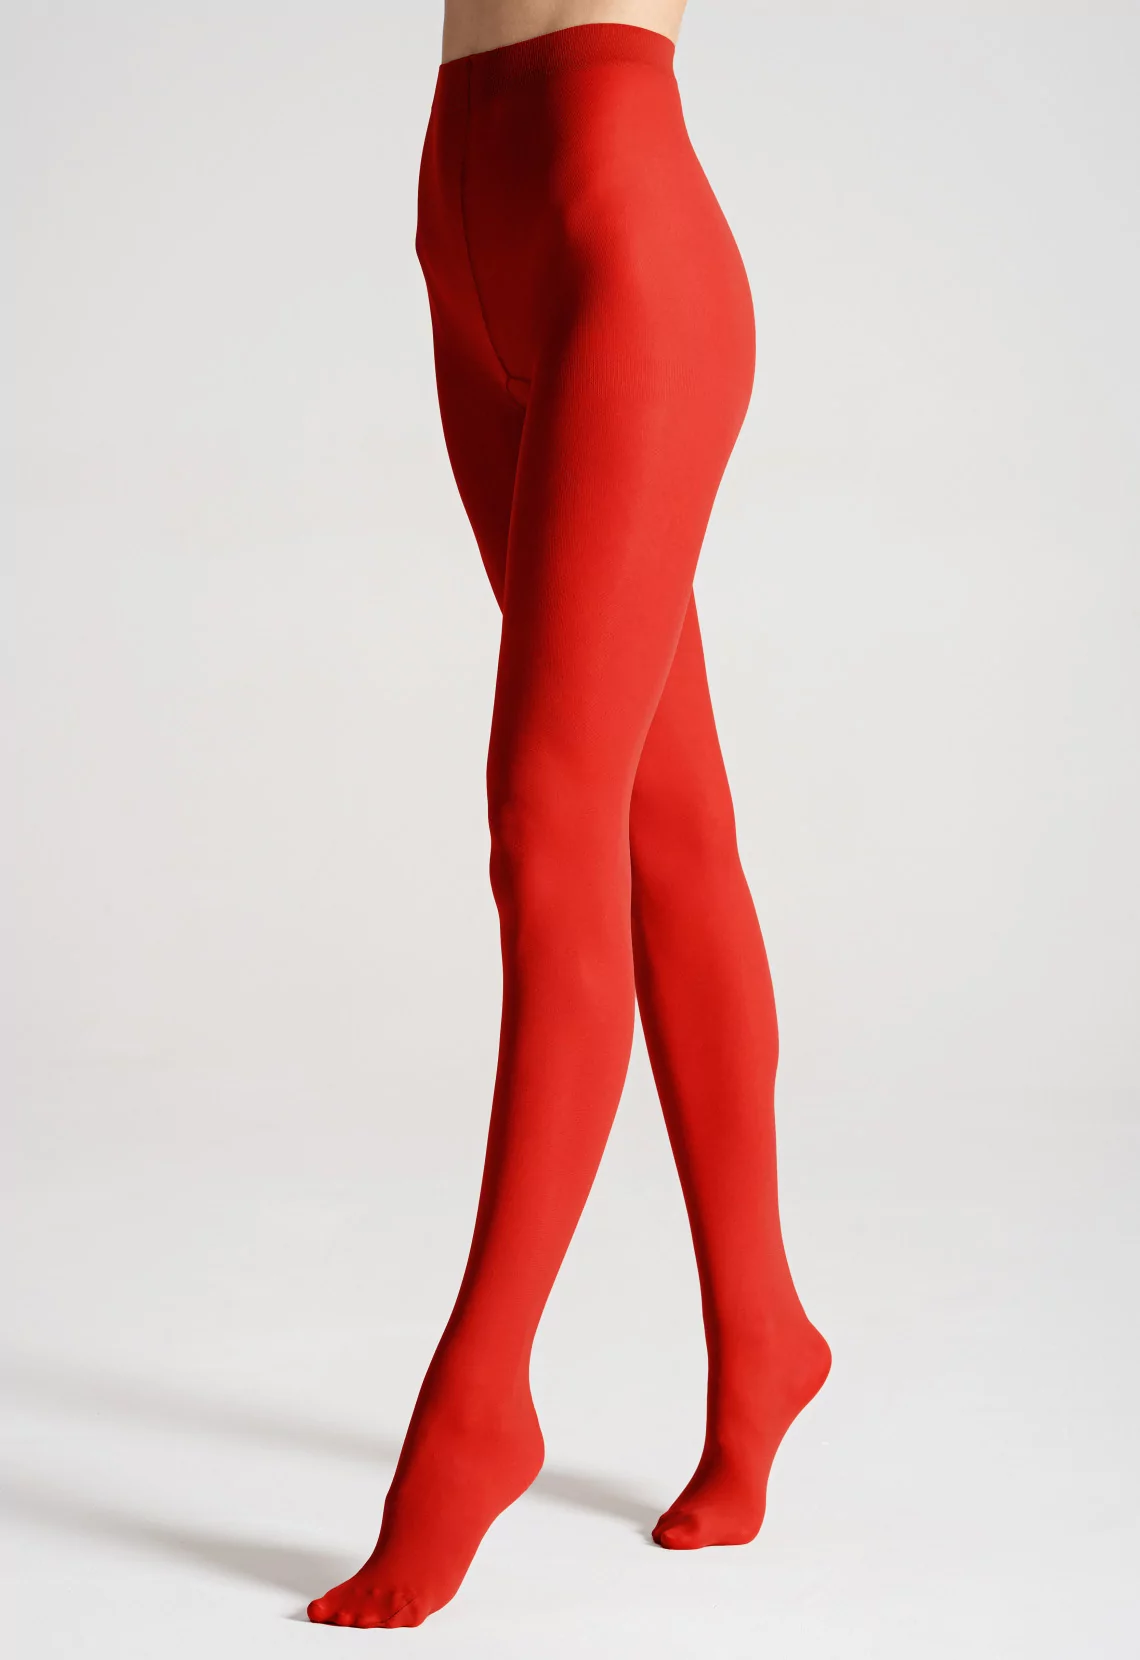 gekleurde pantys dames - rode panty -40 deniers